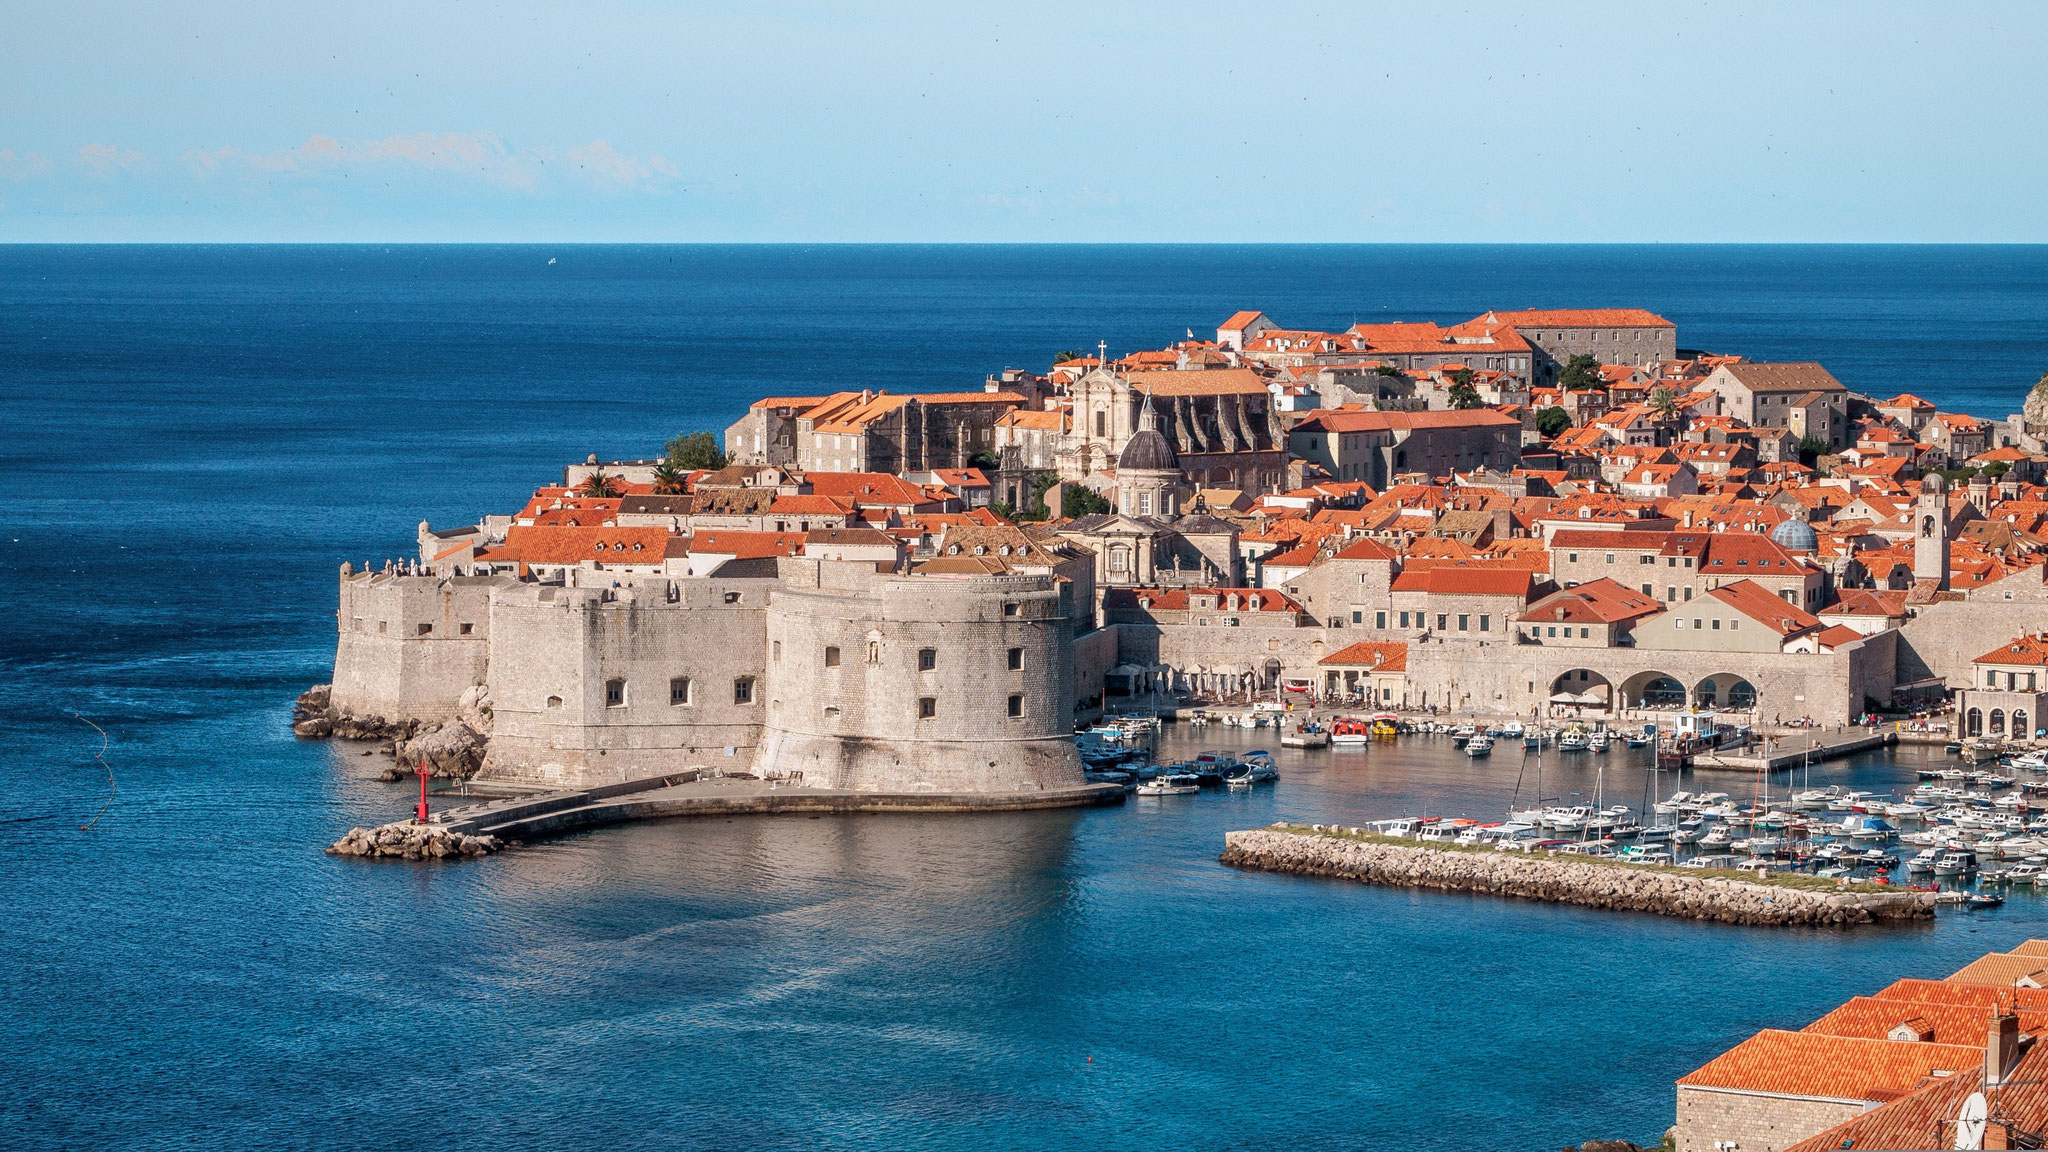 Dubrovnik – von alten, mächtigen Mauern und Wehrtürmen umgeben sowie von allen Seiten vom Meer umspült, ist diese mittelalterliche Stadt eine wahre Schatzkammer architektonischer und kultureller Kunstwerke.  Foto: fjaka / PIXABAY